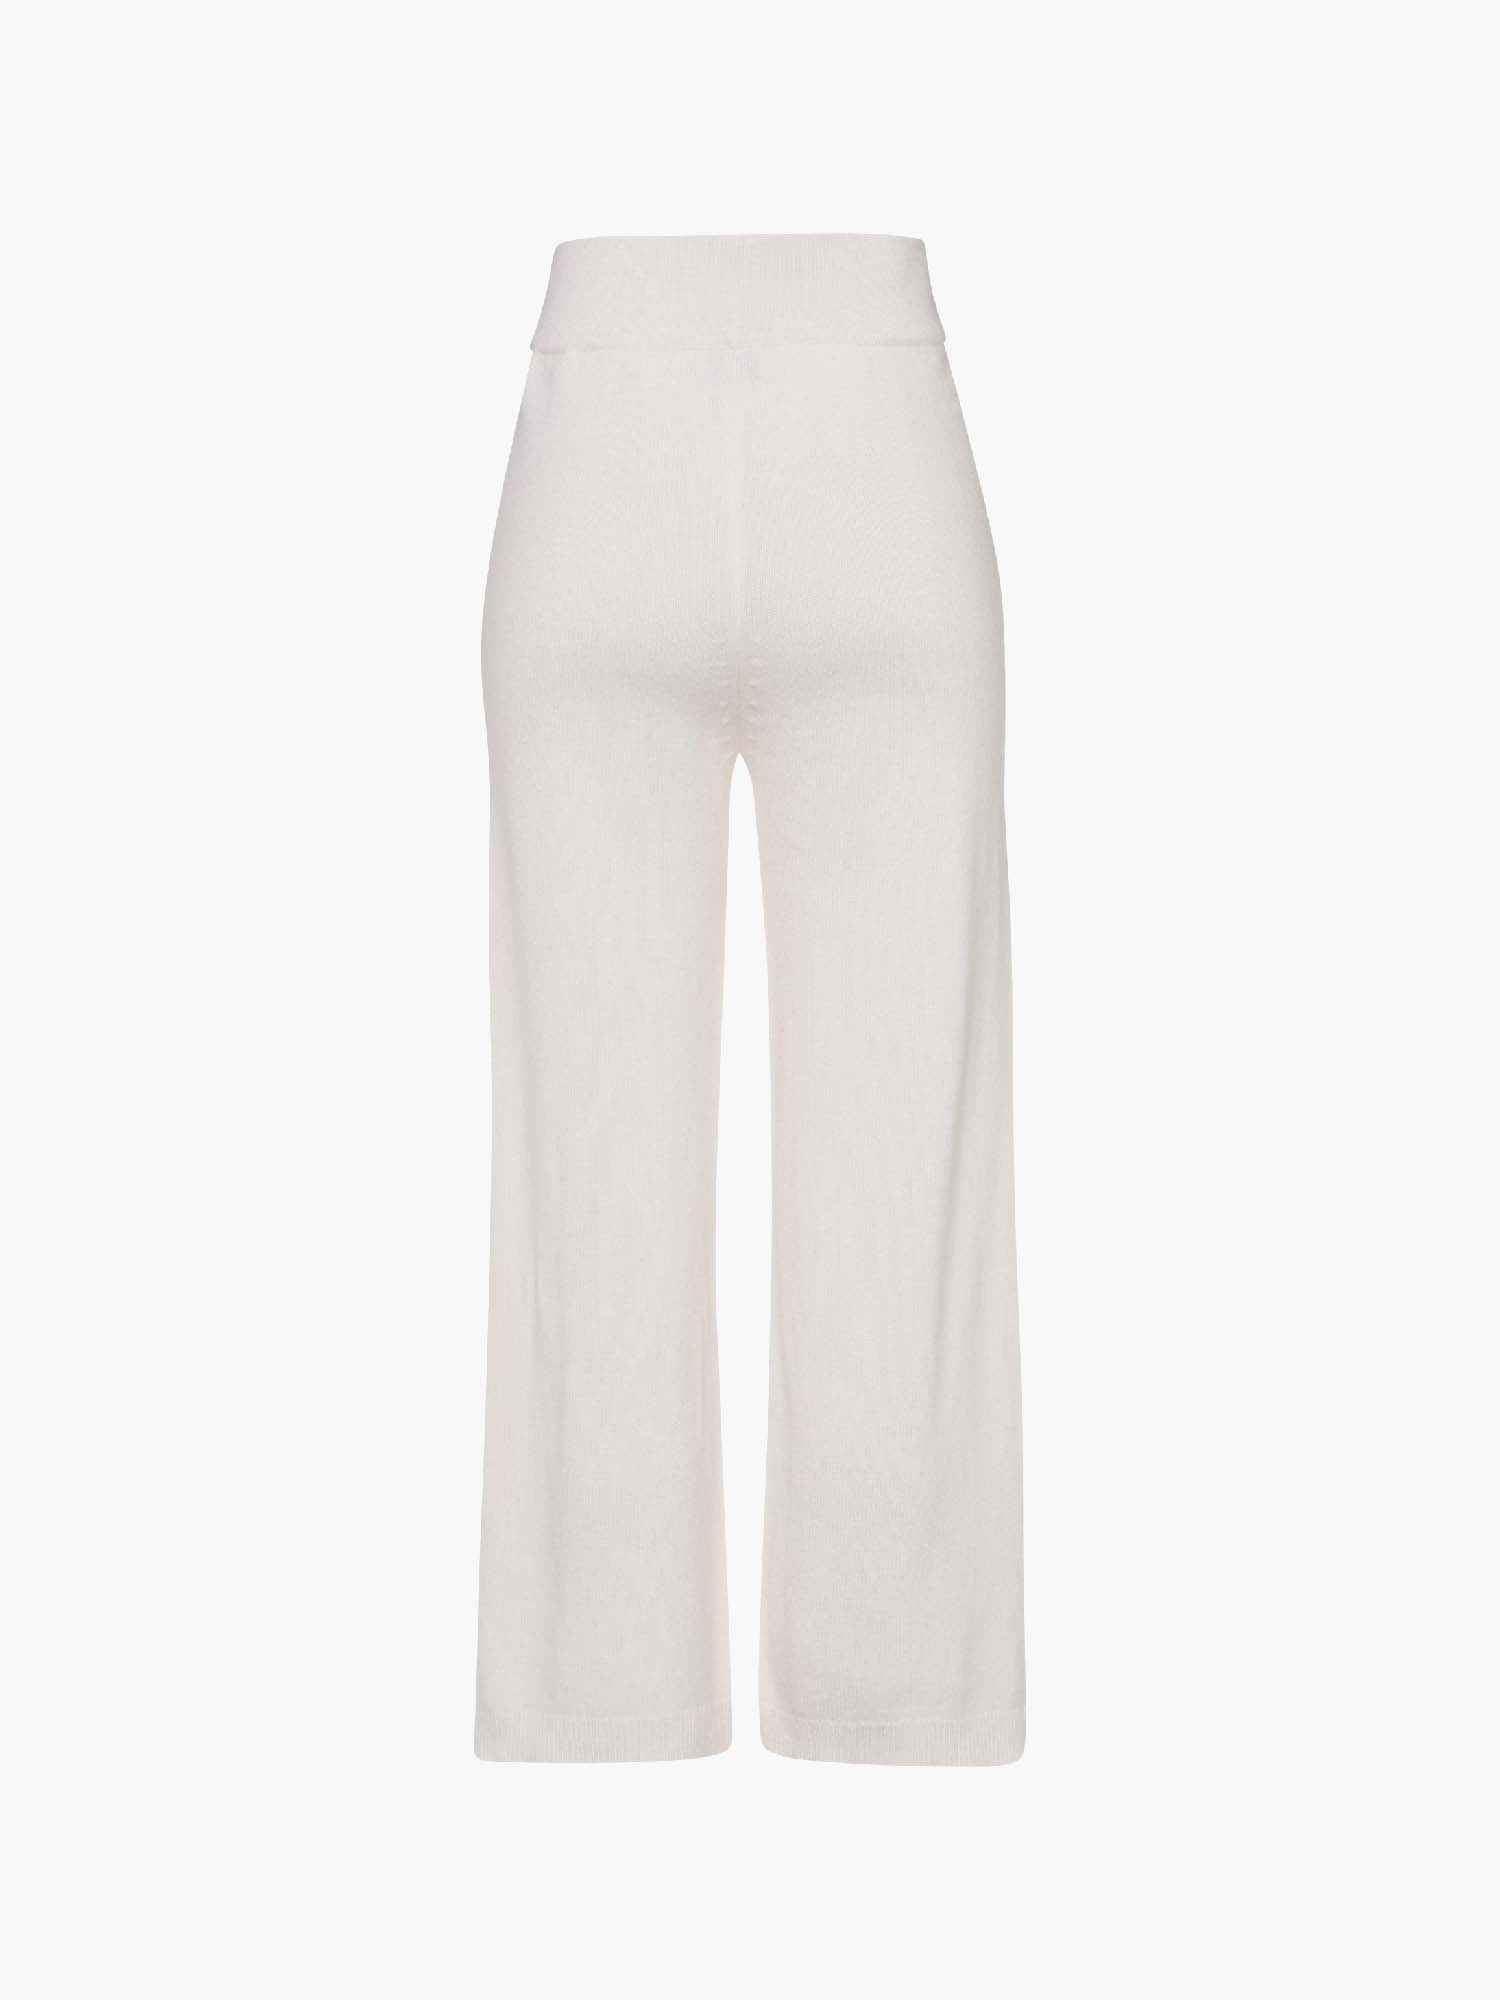 FTC-CASHMERE-OUTLET-SALE-Trousers wide 100% Cashmere-Hosen-MUNICH_VILLAGE-by-ARCHIVIST